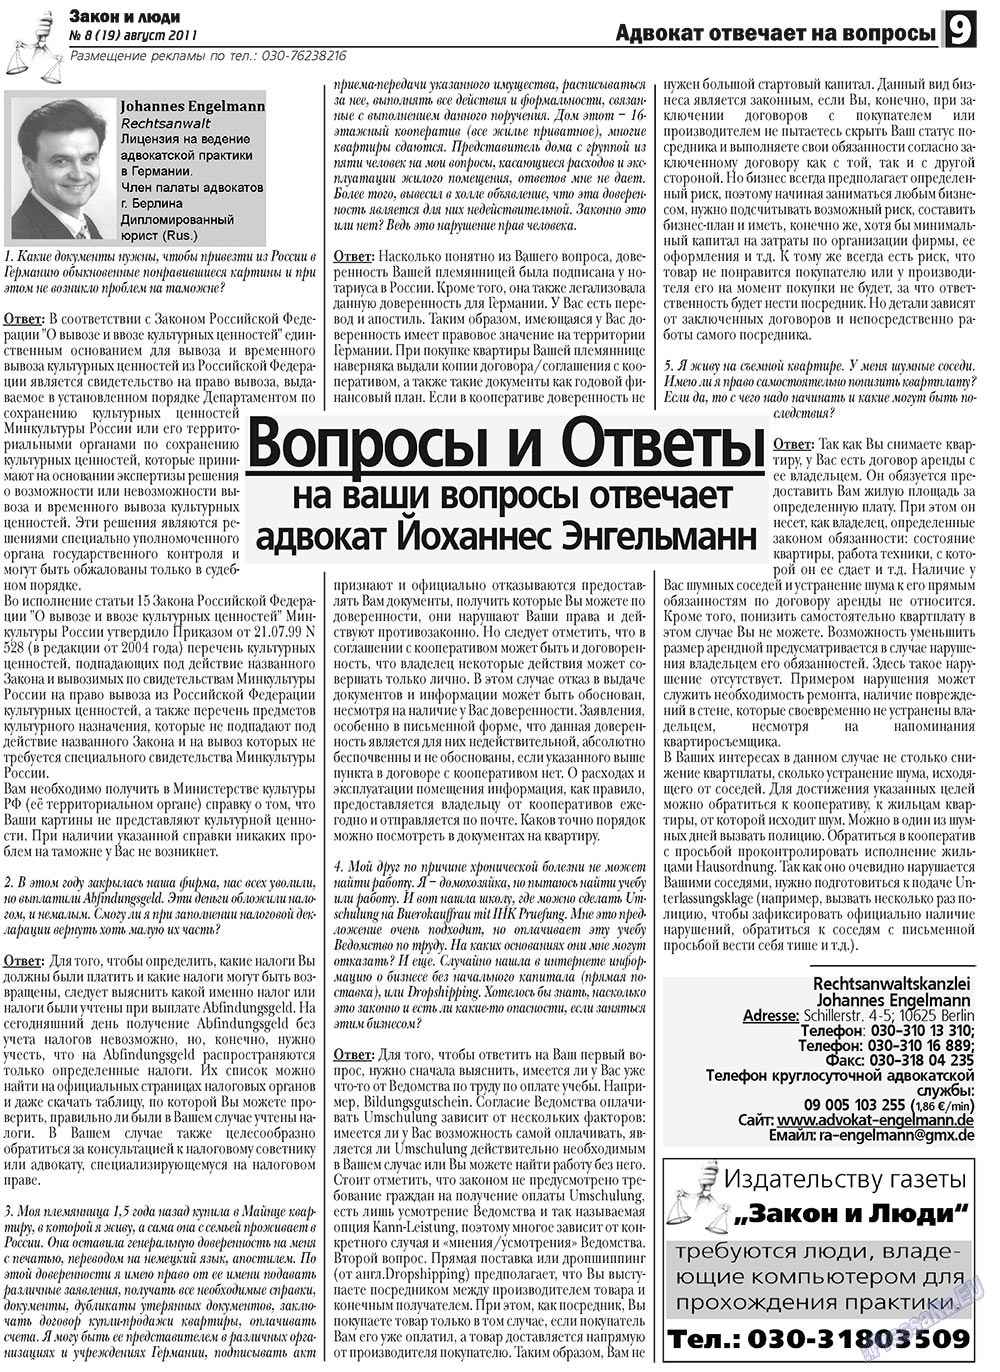 Закон и люди, газета. 2011 №8 стр.9